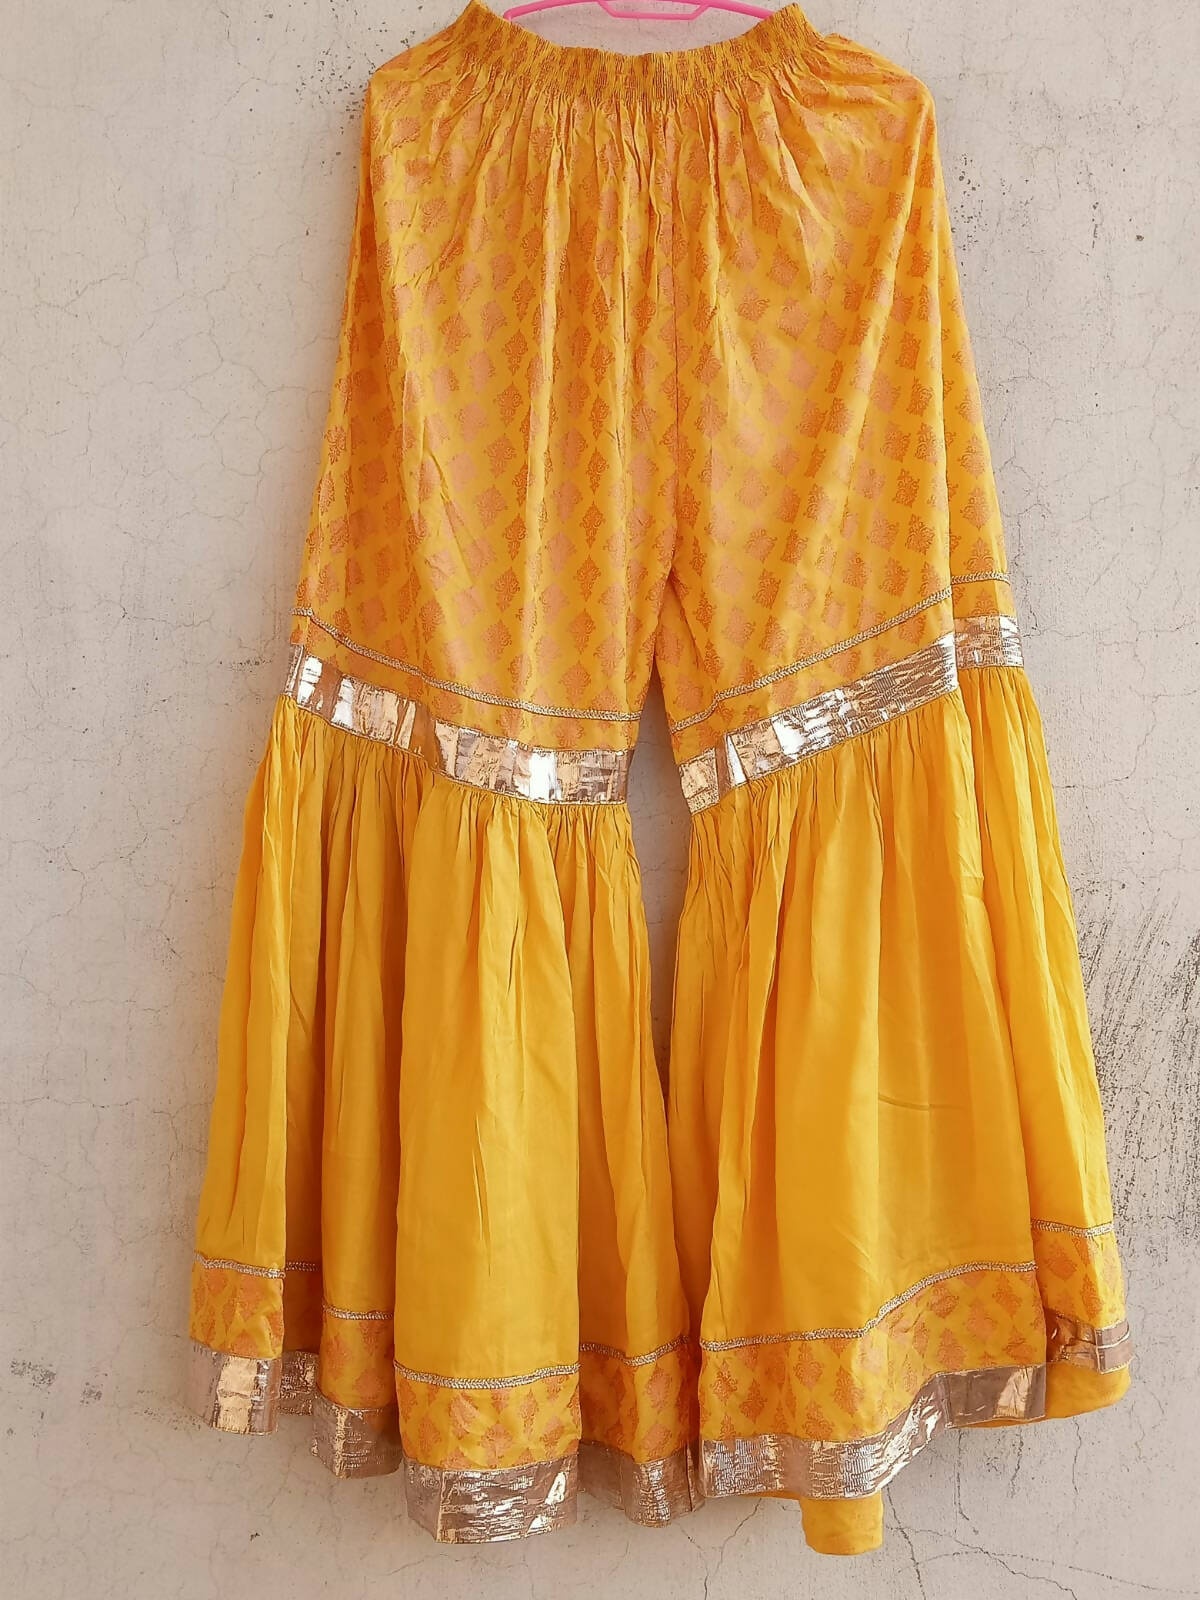 خوبصورت پیلا شارارا (سائز: درمیانہ) | خواتین نے مقامی طور پر فارمل بنائے | بالکل نیا 